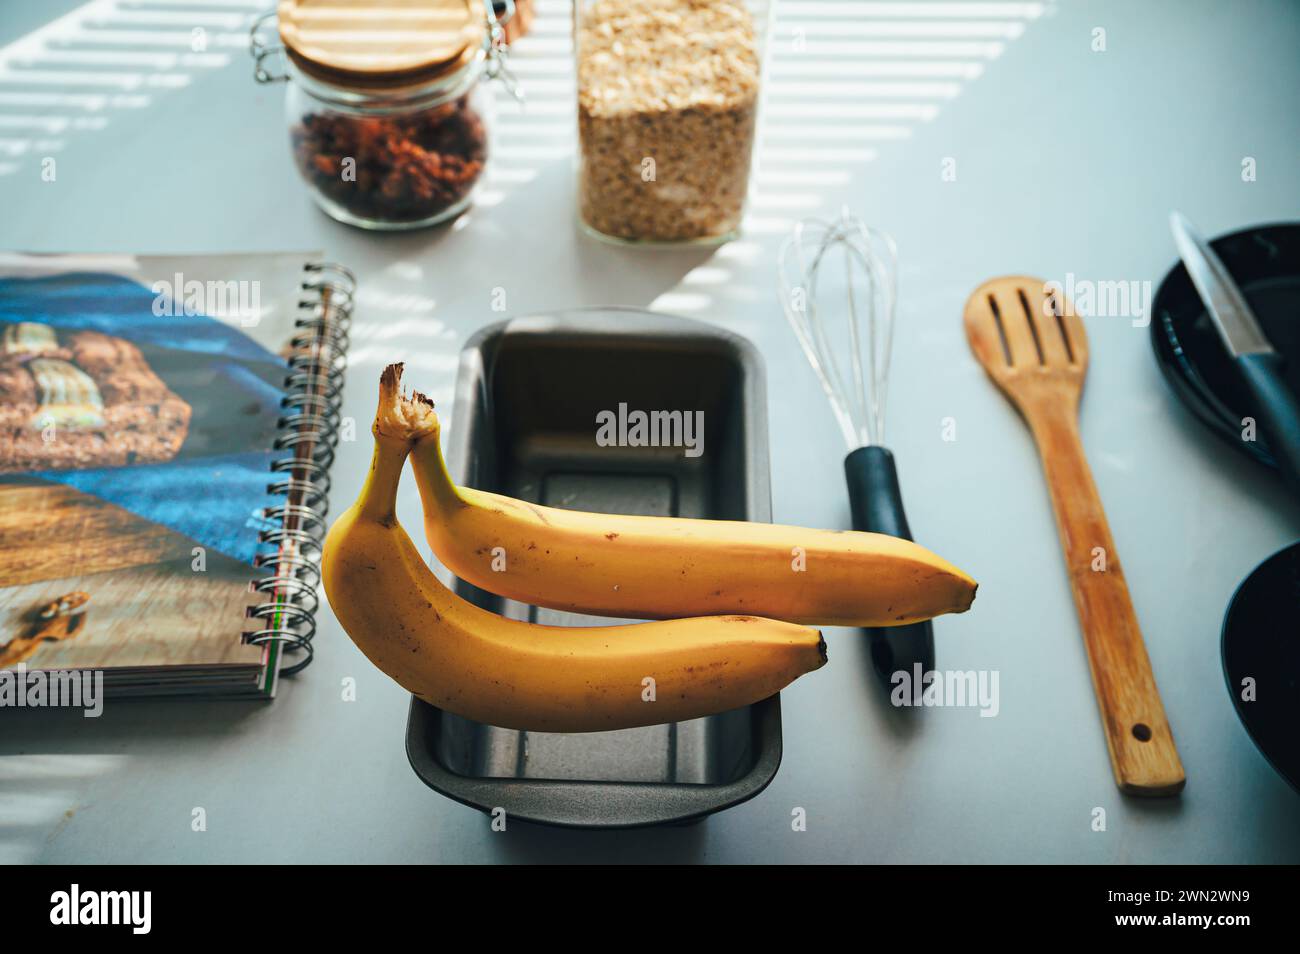 Lo esencial para hornear en un mostrador de cocina: Ingredientes para un pan de plátano perfecto. Foto de stock